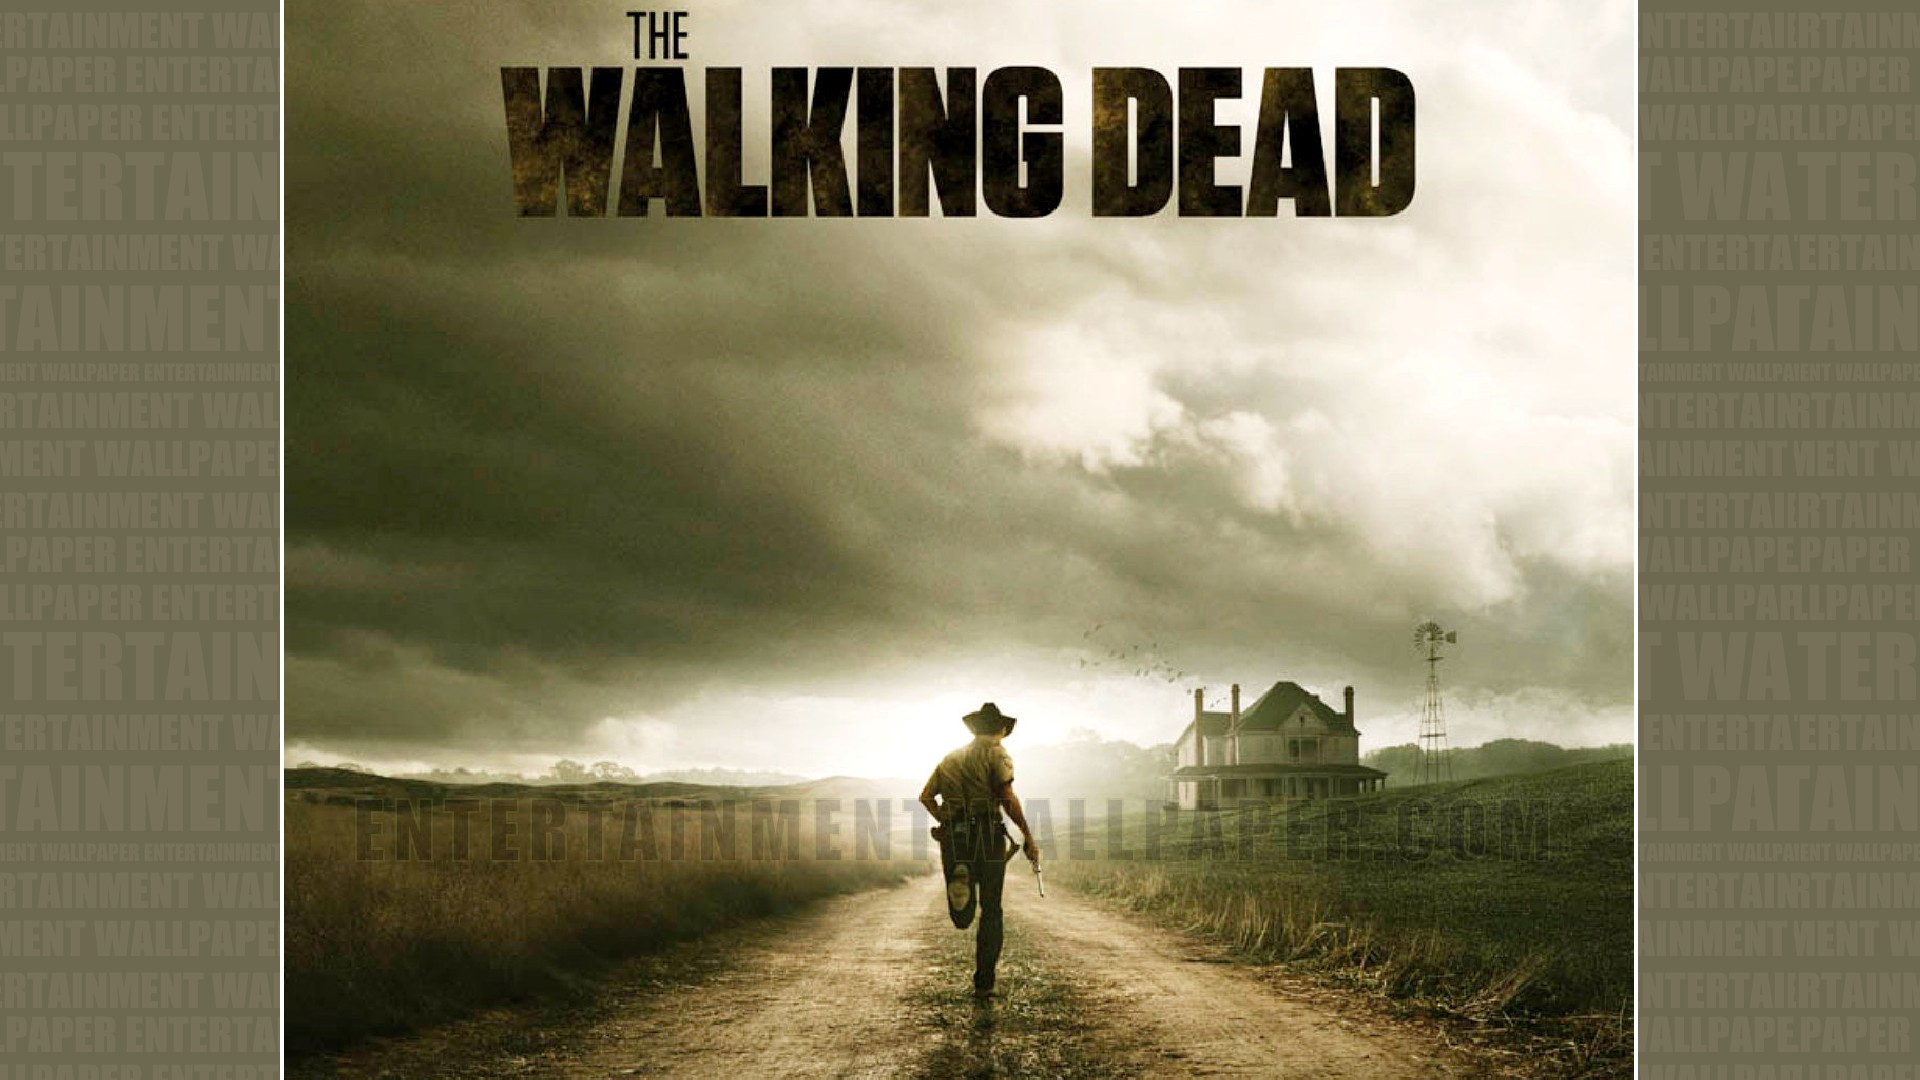 The Walking Dead Wallpaper - #20029603 (1920x1080) | Desktop ...